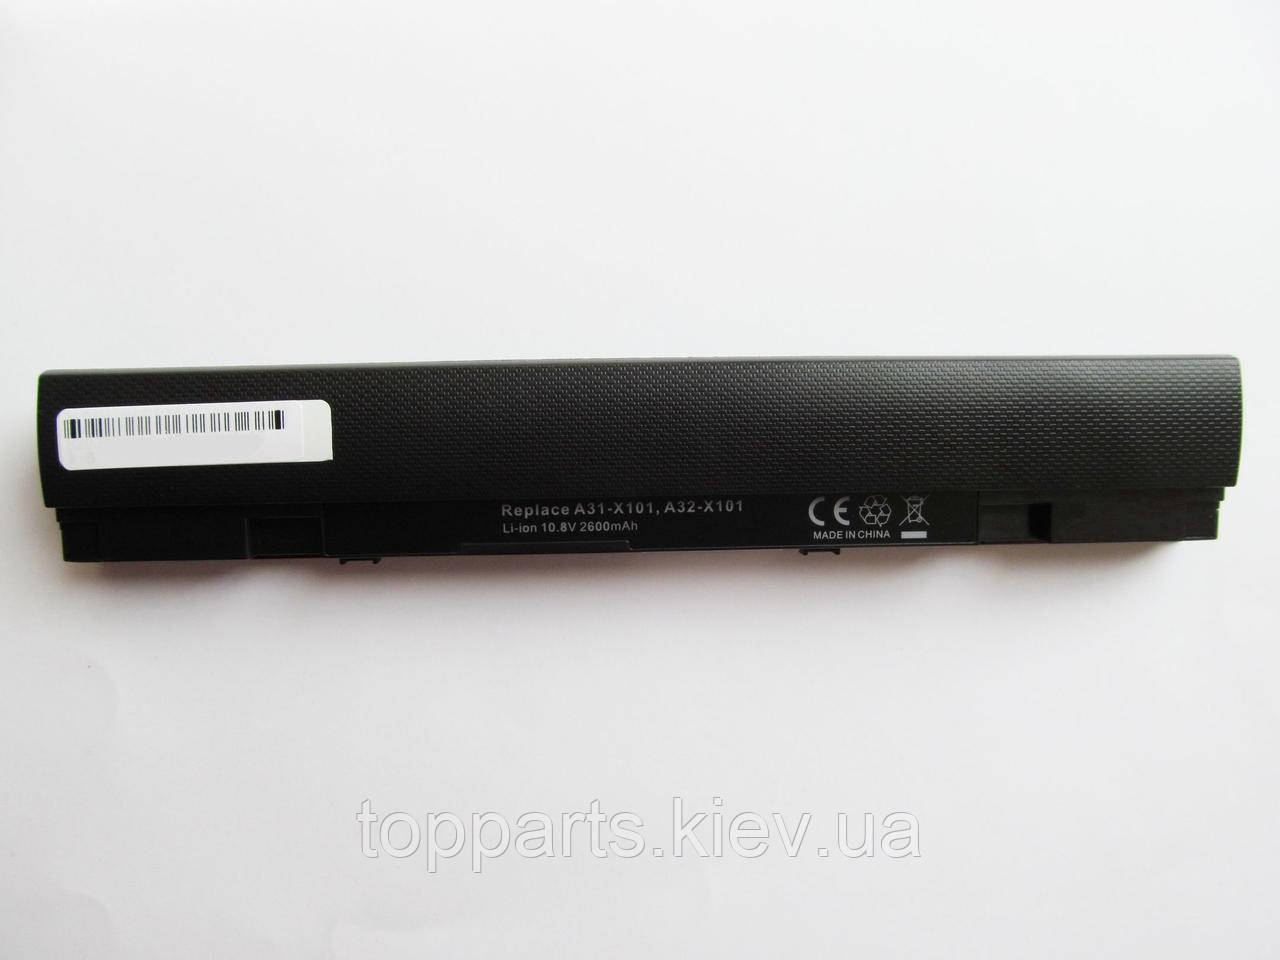 Батарея для ноутбука Asus A32-X101, 2600mAh, 3cell, 10.8V, Li-ion, черная,